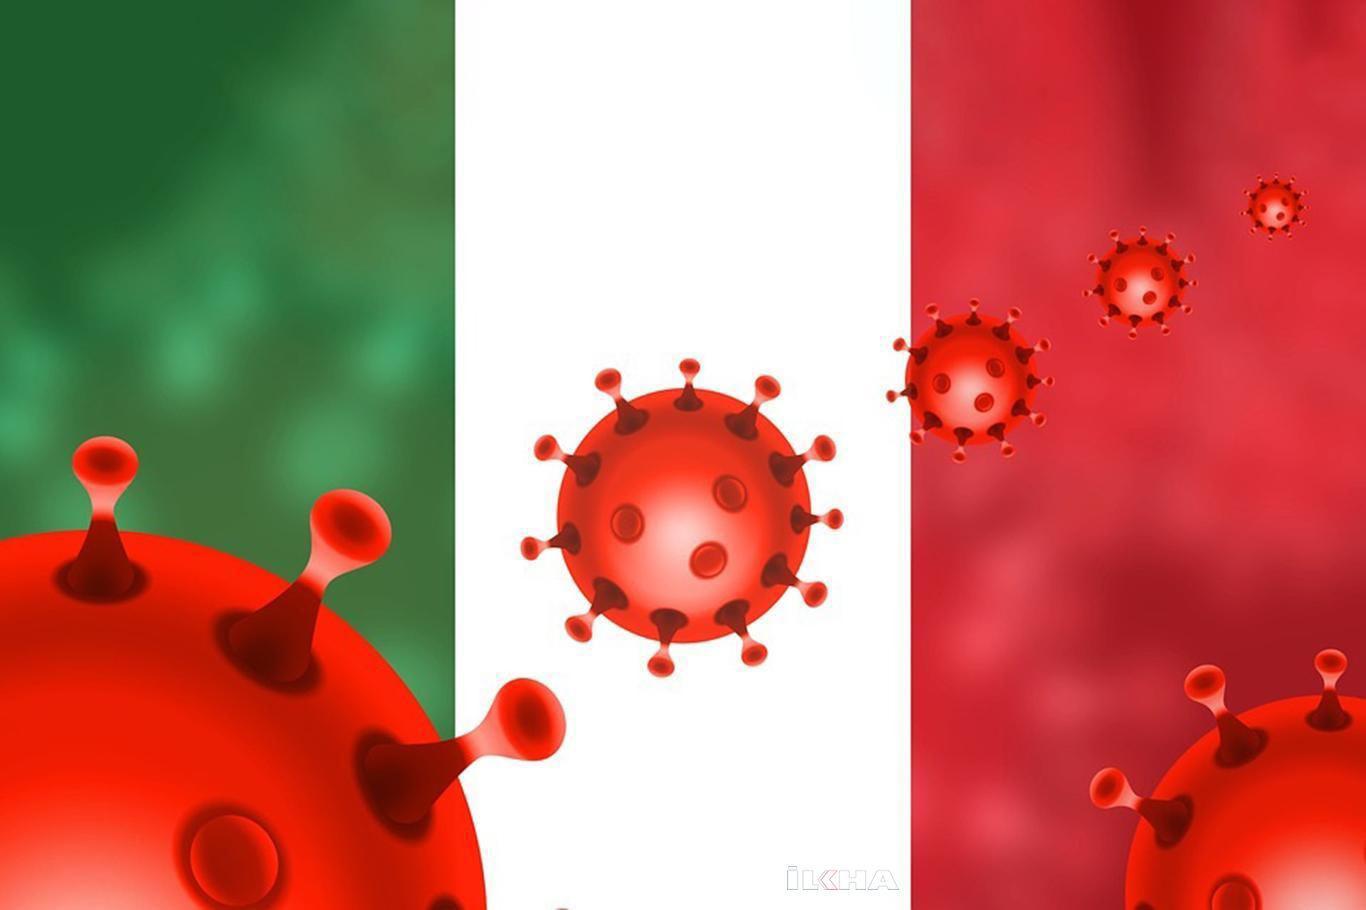 İtalya'da Coronavirus nedeni ile ölenlerin sayısı 35 bin 17 oldu